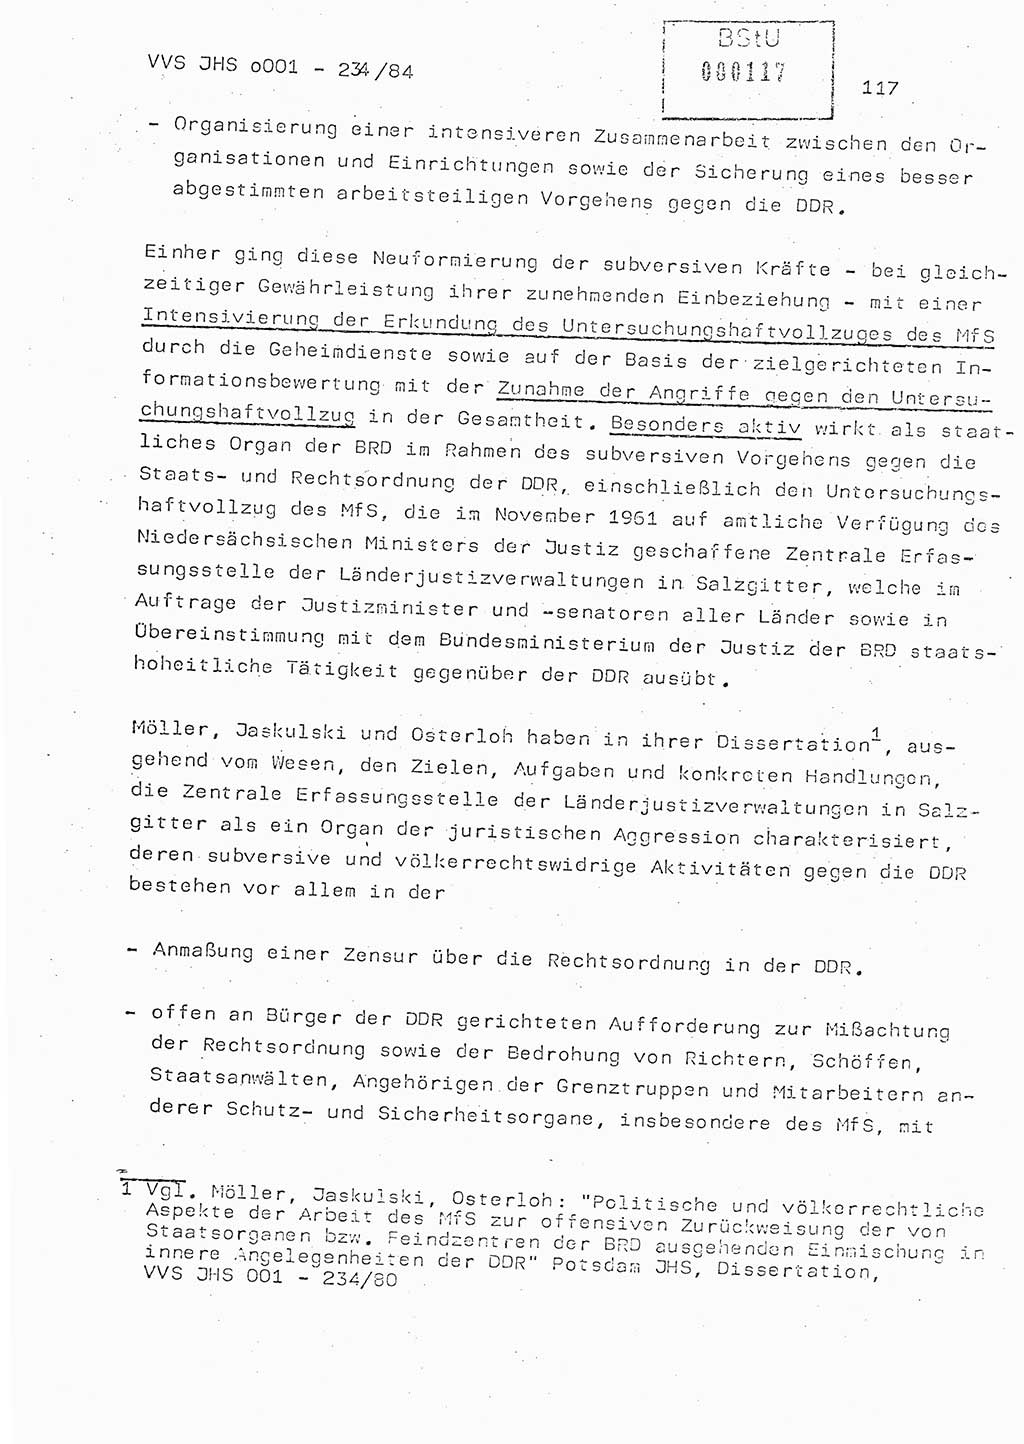 Dissertation Oberst Siegfried Rataizick (Abt. ⅩⅣ), Oberstleutnant Volkmar Heinz (Abt. ⅩⅣ), Oberstleutnant Werner Stein (HA Ⅸ), Hauptmann Heinz Conrad (JHS), Ministerium für Staatssicherheit (MfS) [Deutsche Demokratische Republik (DDR)], Juristische Hochschule (JHS), Vertrauliche Verschlußsache (VVS) o001-234/84, Potsdam 1984, Seite 117 (Diss. MfS DDR JHS VVS o001-234/84 1984, S. 117)